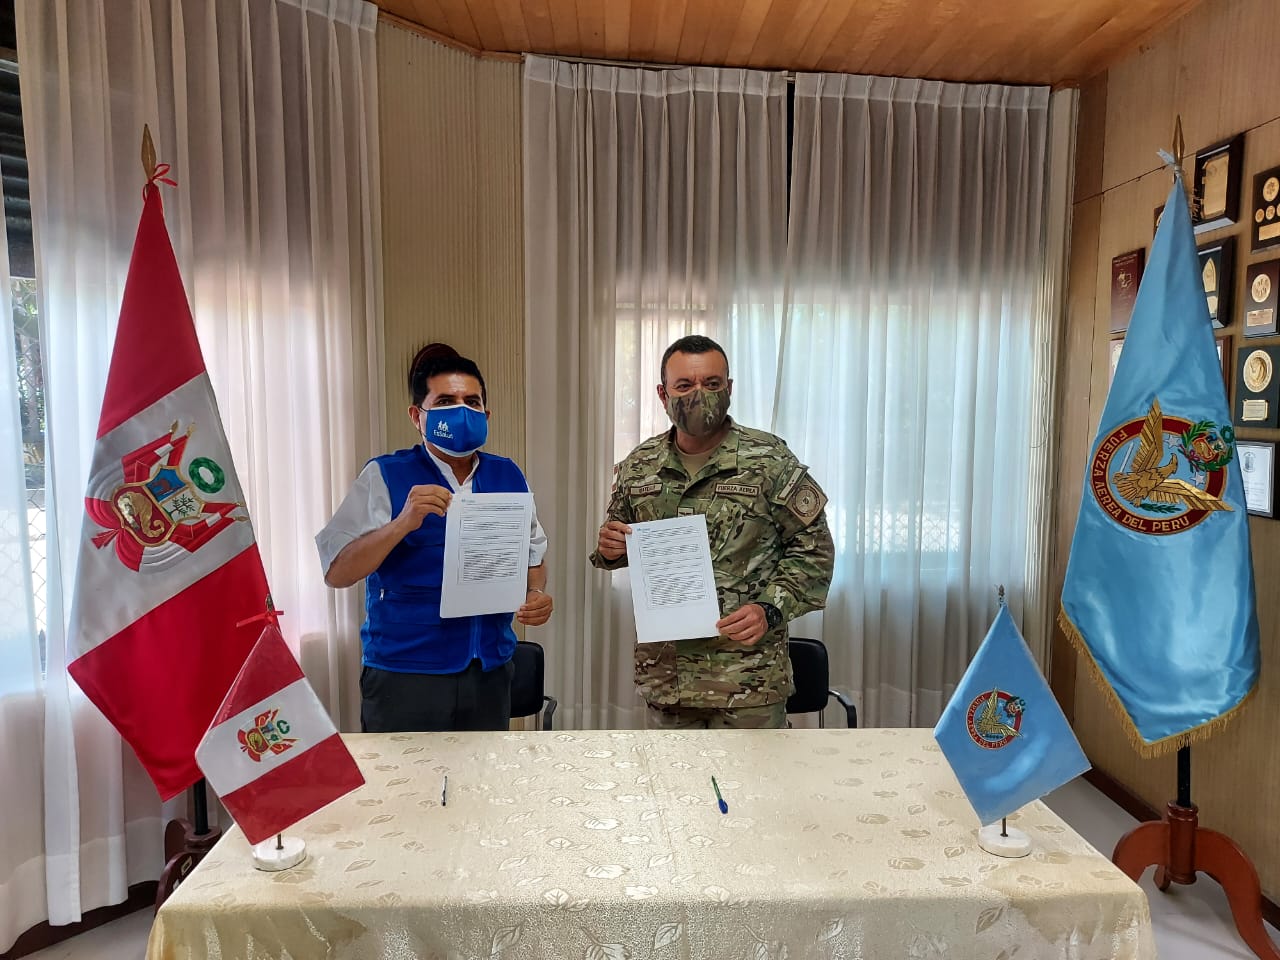 Essalud - EsSalud Loreto y Fuerza Aérea del Perú firmaron convenio para desarrollar programa Mi Salud – Mi vida